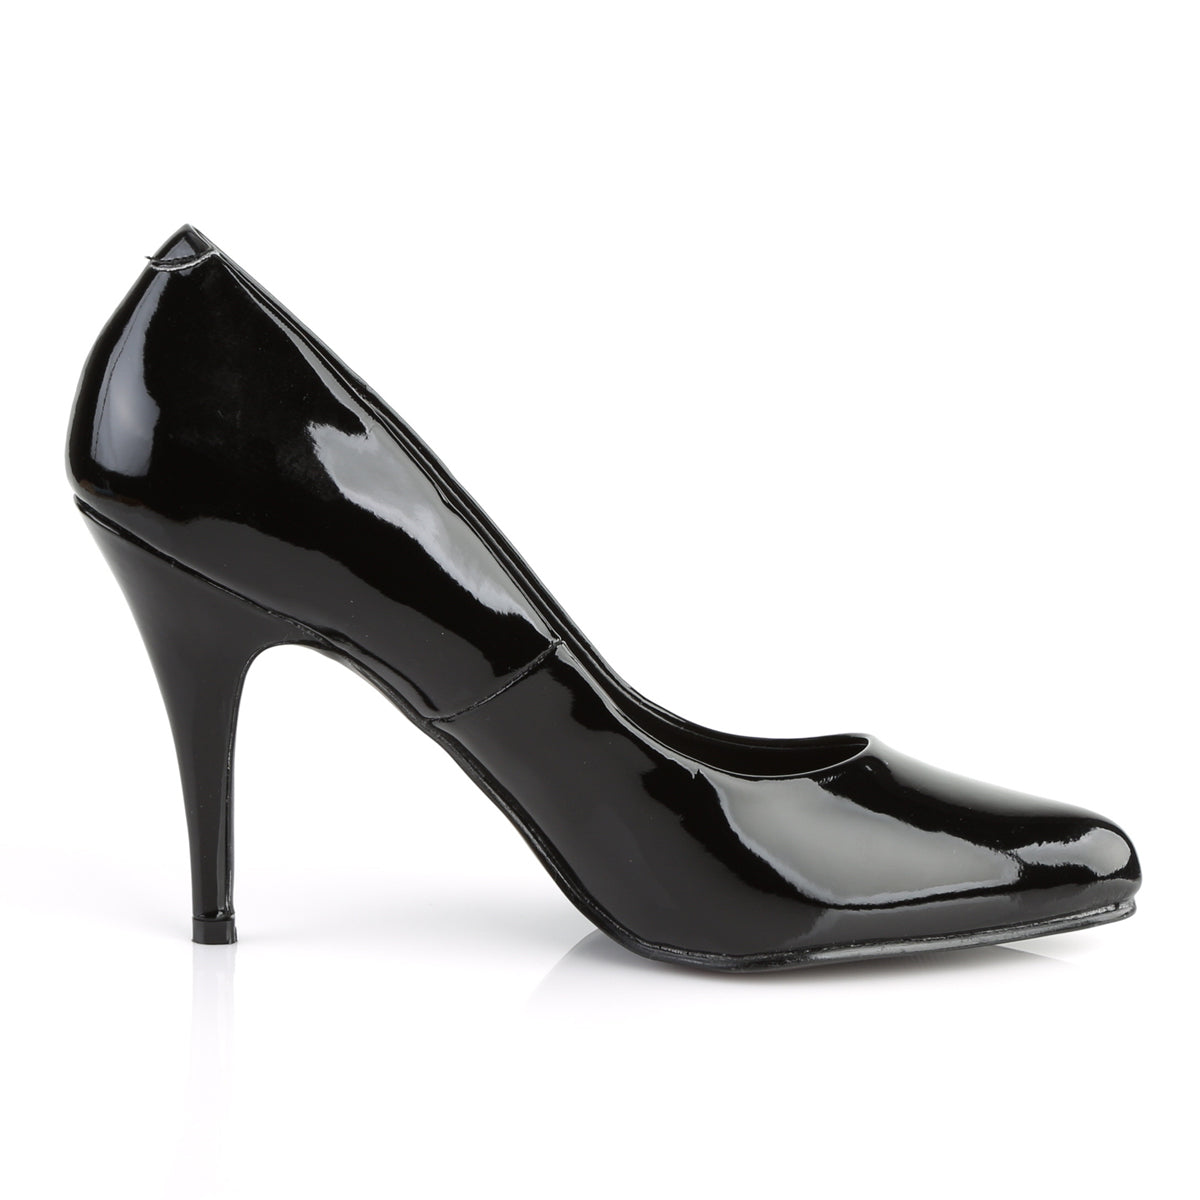 VANITY-420 Pleaser Shoe 4" Heel Black Patent Fetish Footwear-Pleaser- Sexy Shoes Fetish Heels